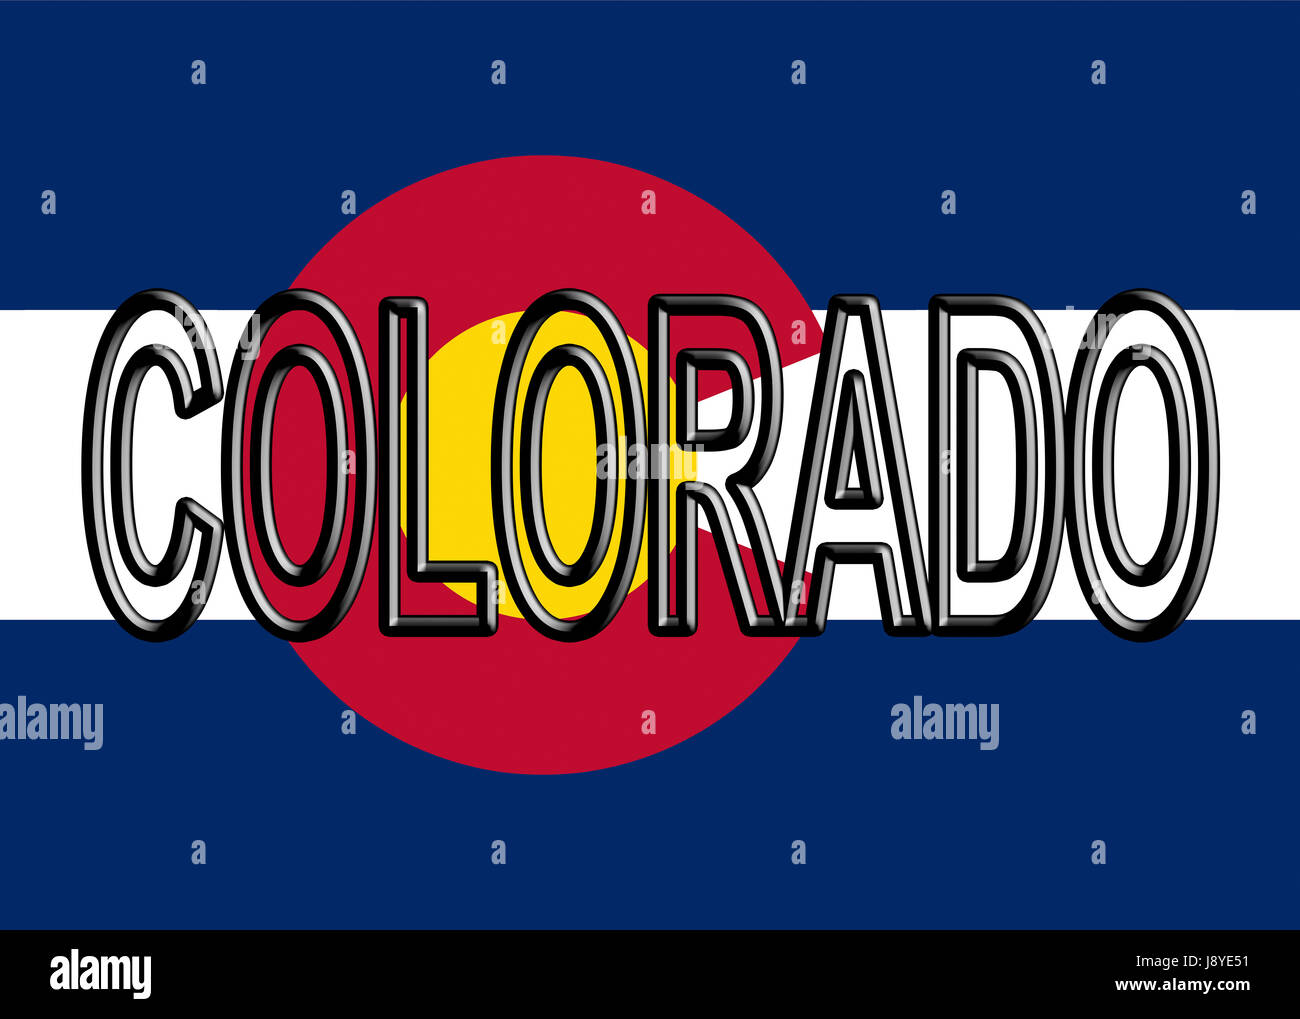 Abbildung der Flagge des Staates Colorado in den USA mit dem Staat auf die  Fahne geschrieben Stockfotografie - Alamy